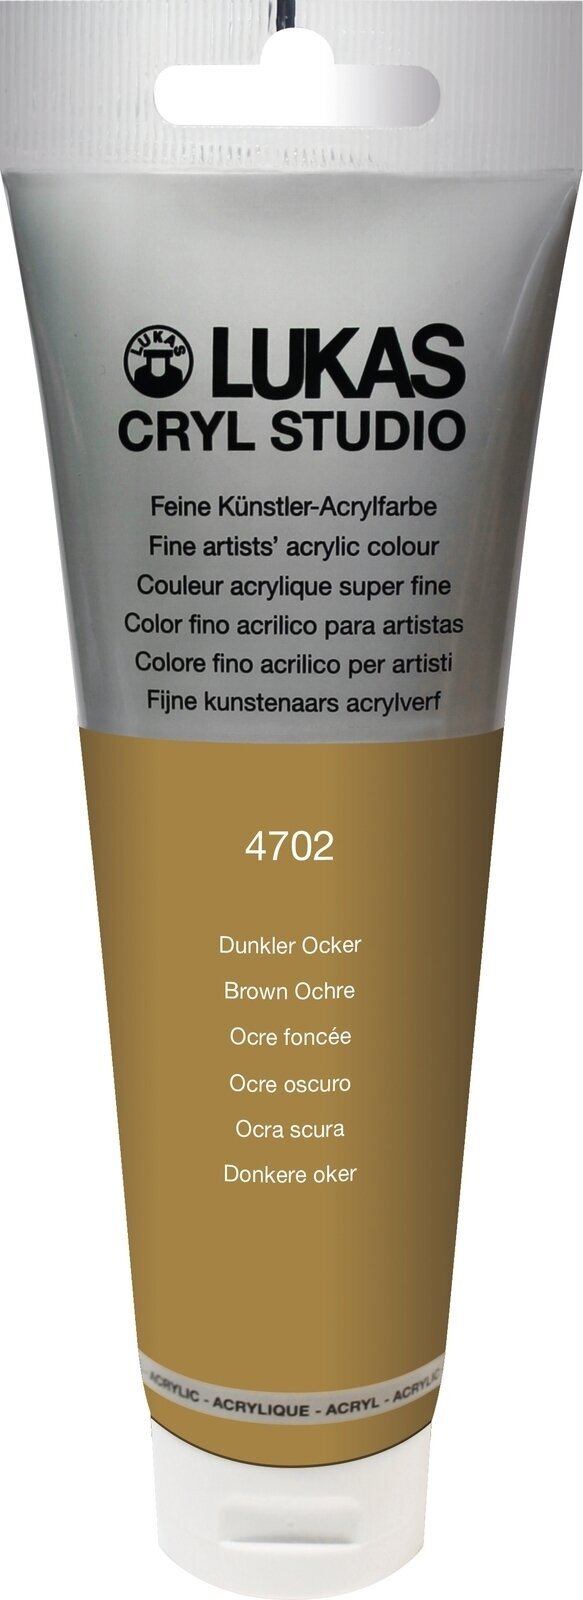 Acrylfarbe Lukas Cryl Studio Acrylic Paint Plastic Tube Acrylfarbe Brown Ochre 125 ml 1 Stck